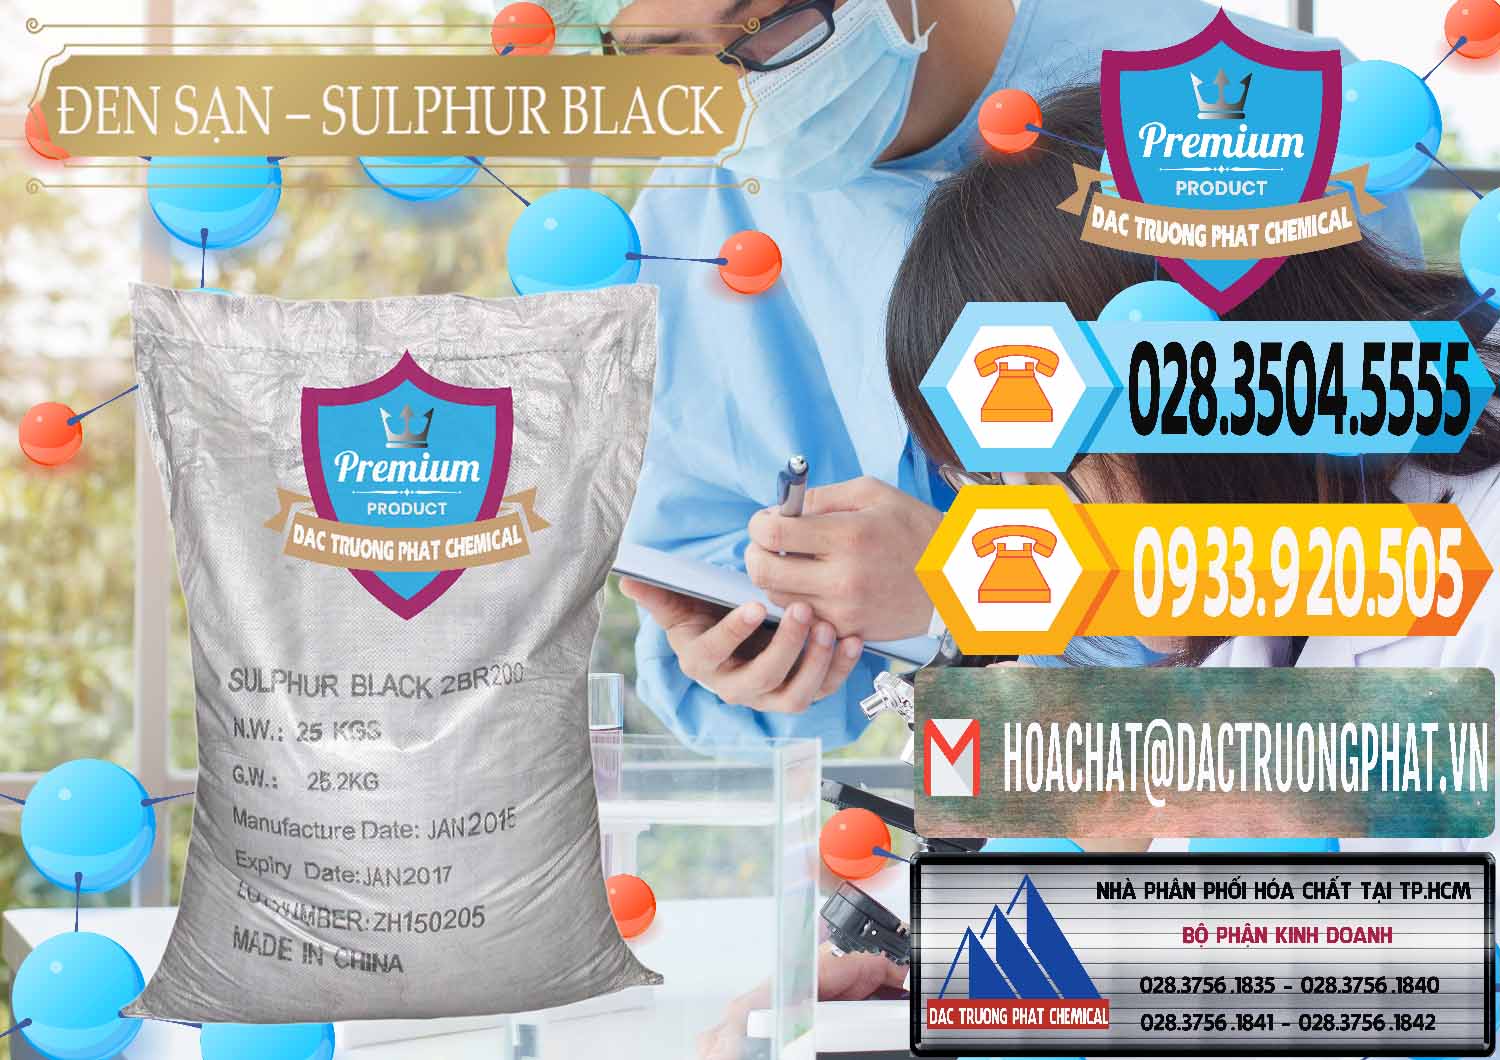 Nơi chuyên phân phối - bán Đen Sạn – Sulphur Black Trung Quốc China - 0062 - Đơn vị chuyên phân phối - nhập khẩu hóa chất tại TP.HCM - hoachattayrua.net